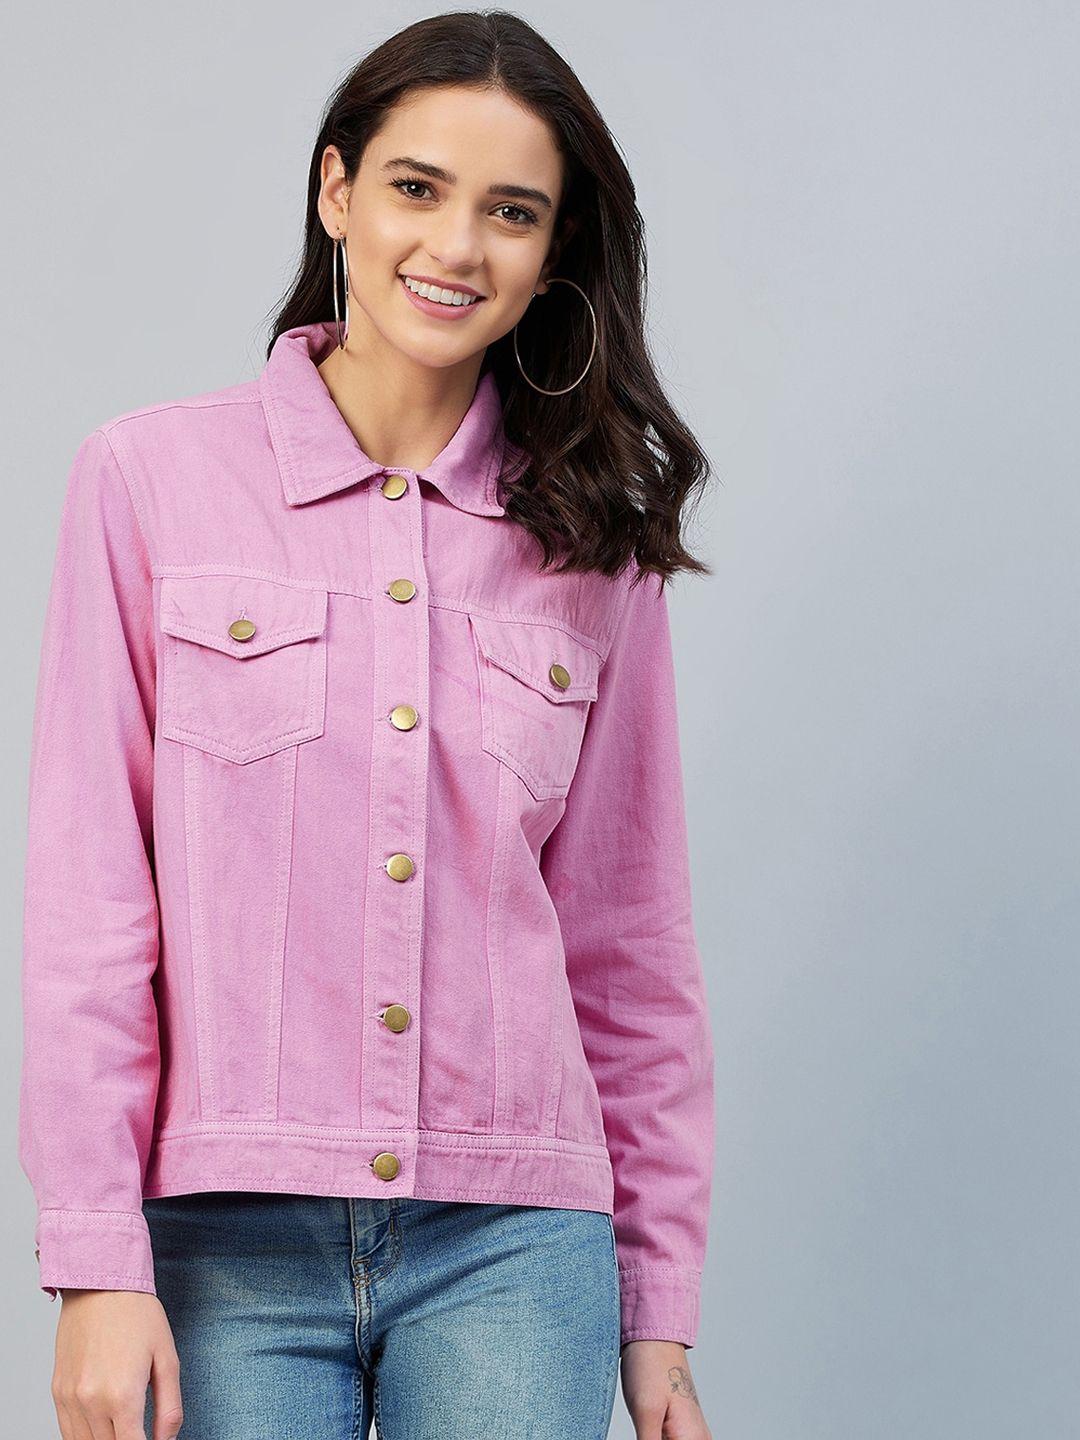 stylestone women pink cotton denim jacket